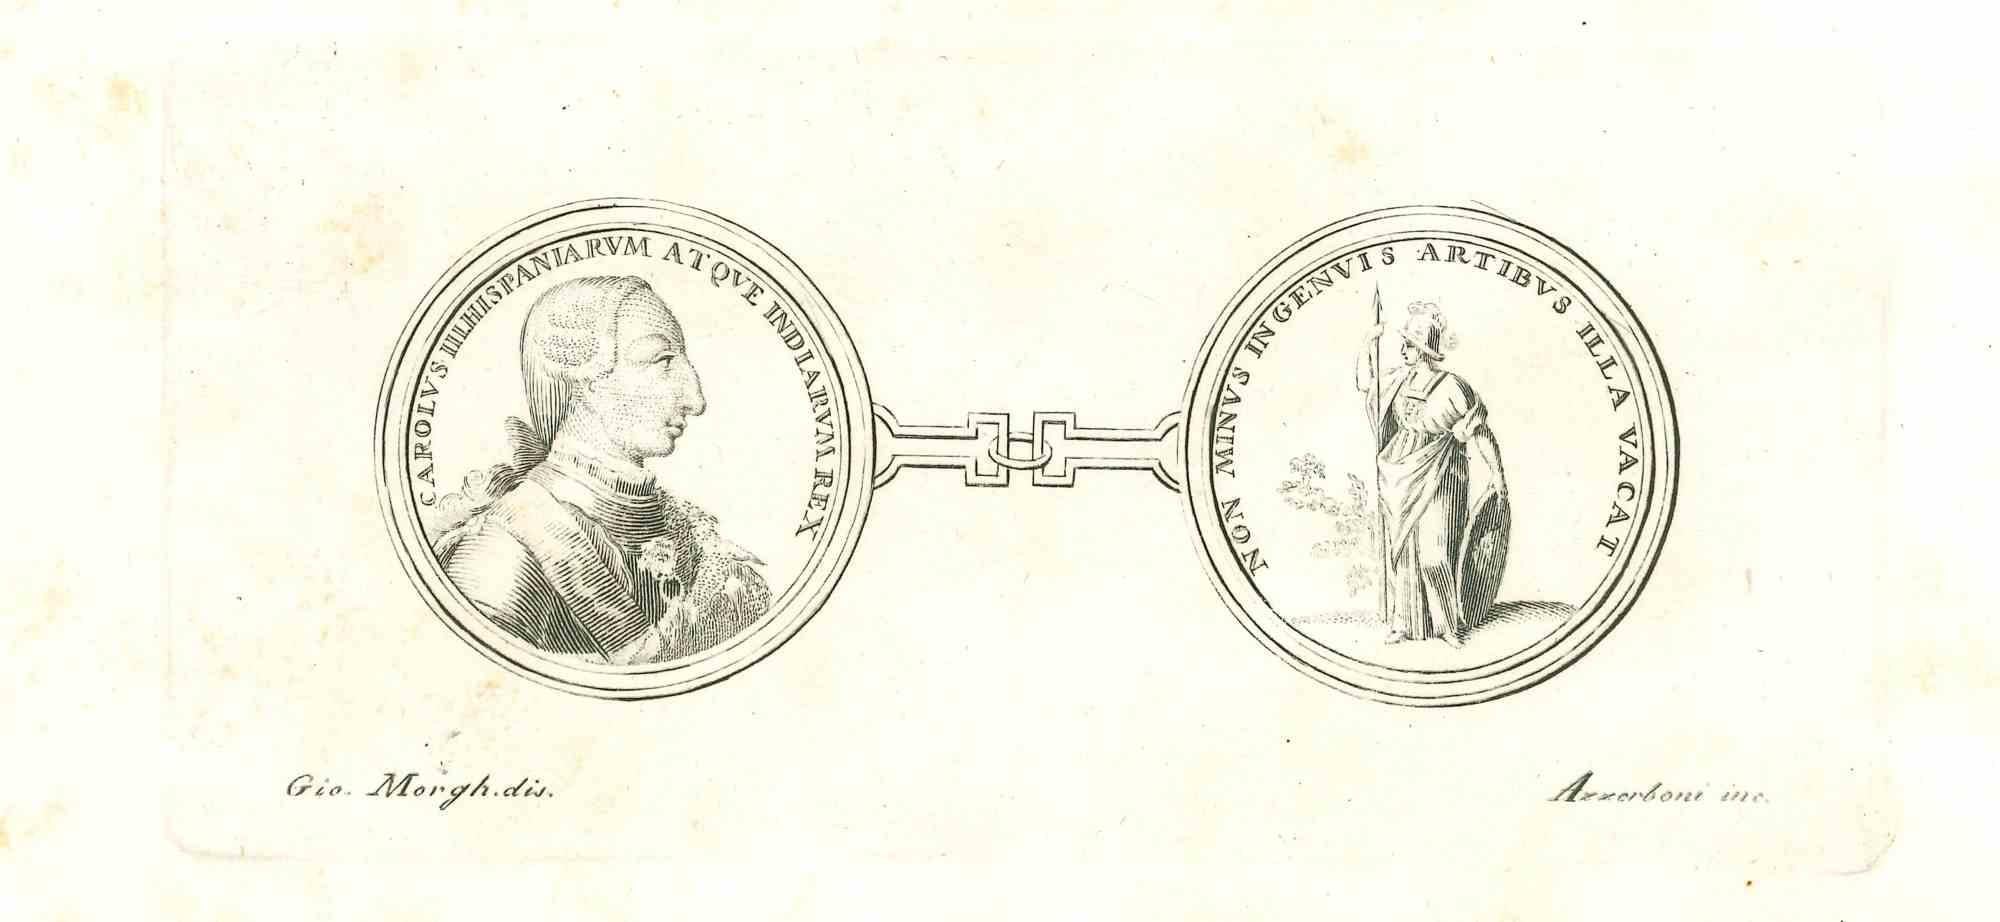 Moderne Münze aus dem Reich der zwei Sizilien, aus der Serie "Antiquitäten von Herculaneum", ist eine Originalradierung auf Papier nach einem Entwurf von Givanni Morghen aus dem 18.

Signiert auf der Platte.

Gute Bedingungen.

Die Radierung gehört